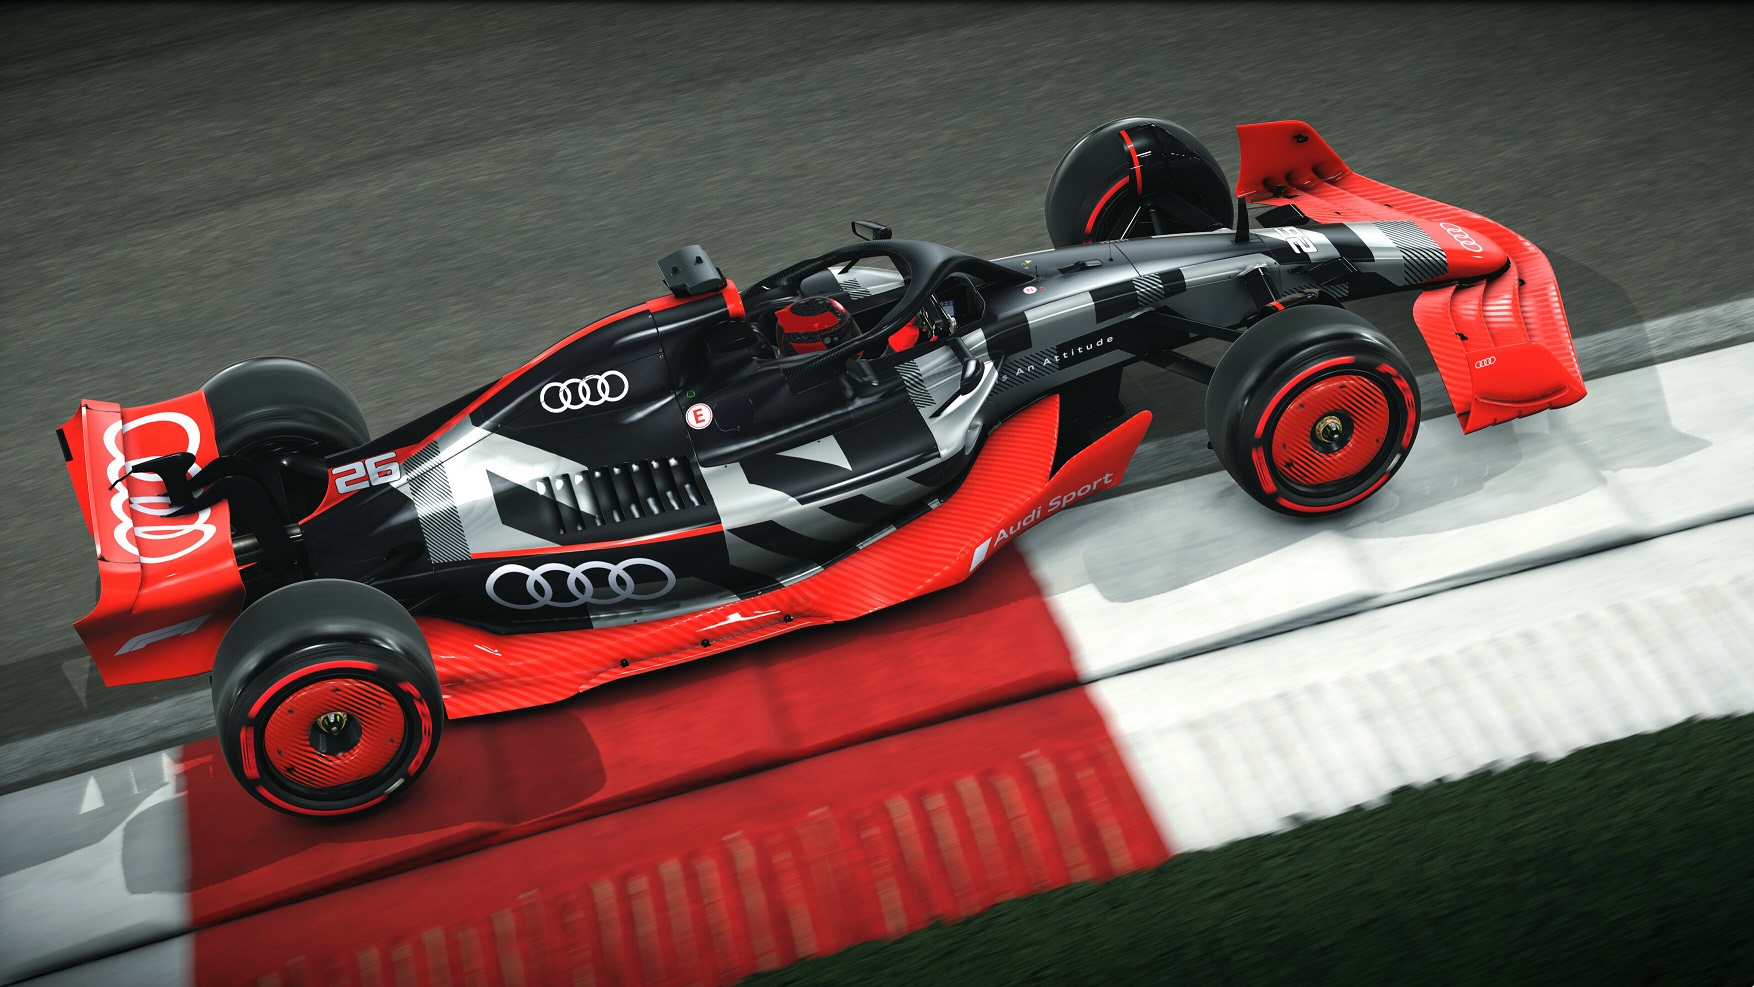 Audi faz estreia mundial no jogo oficial da Fórmula 1